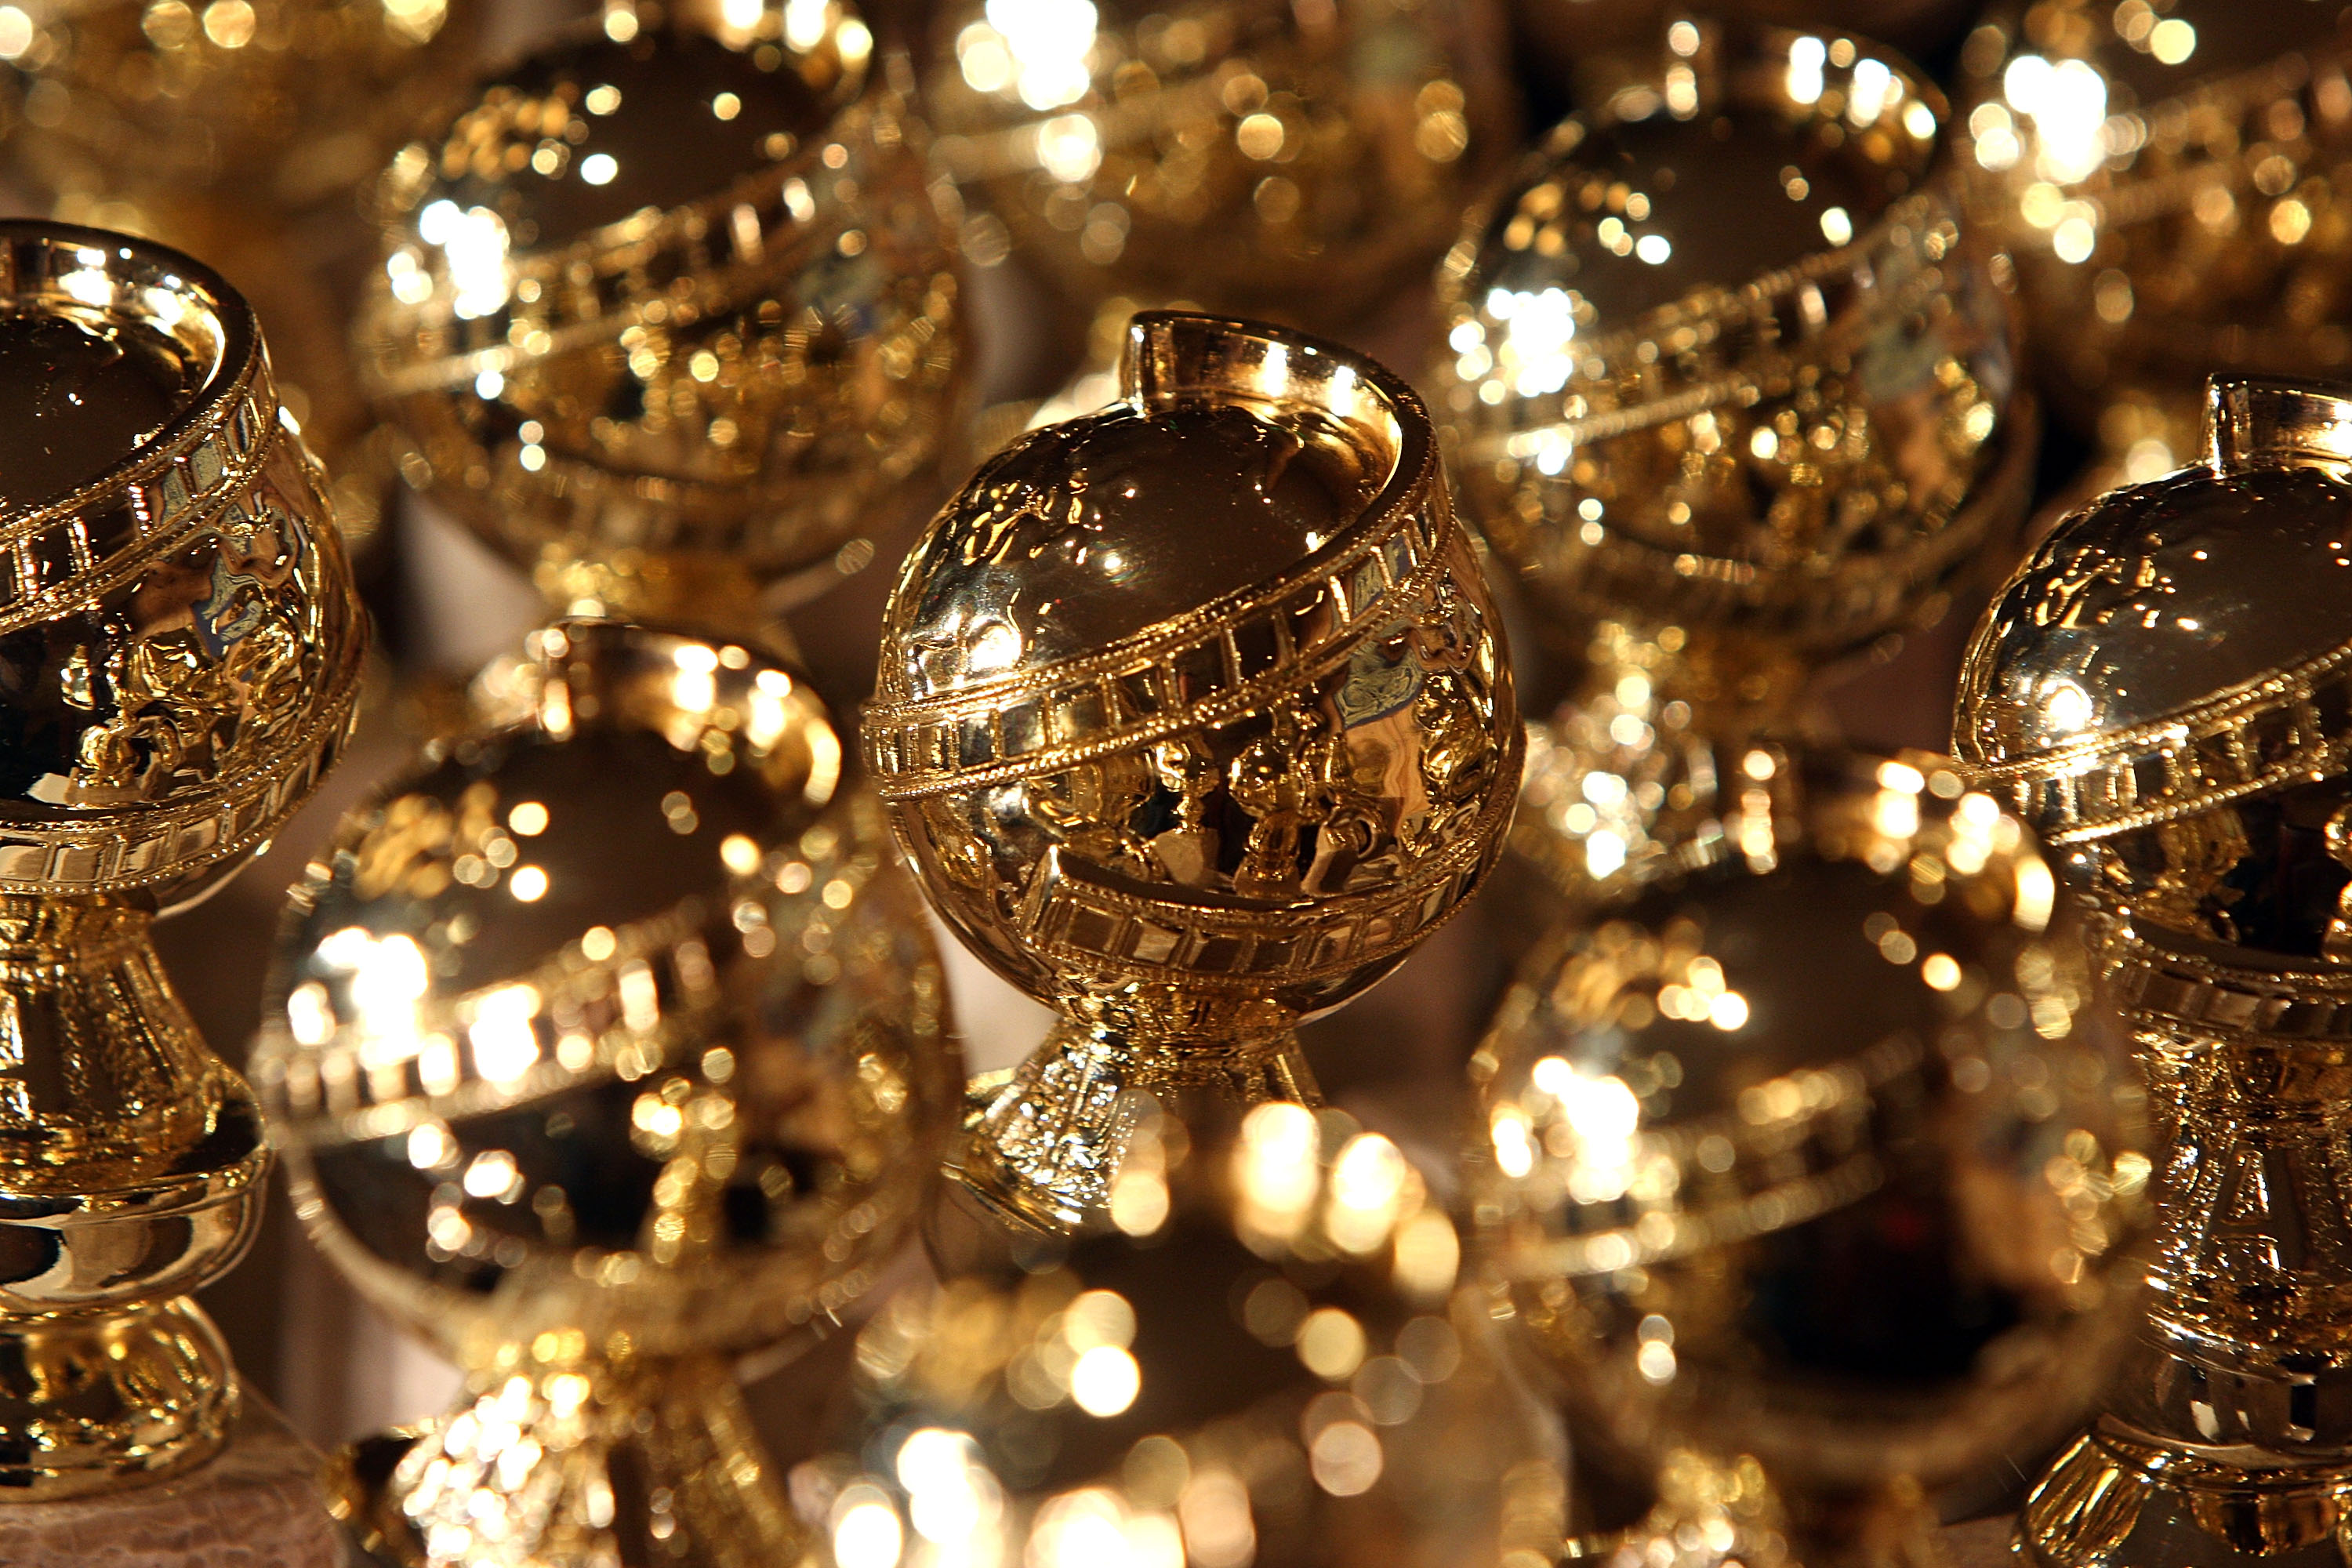 Golden Globes award statues.